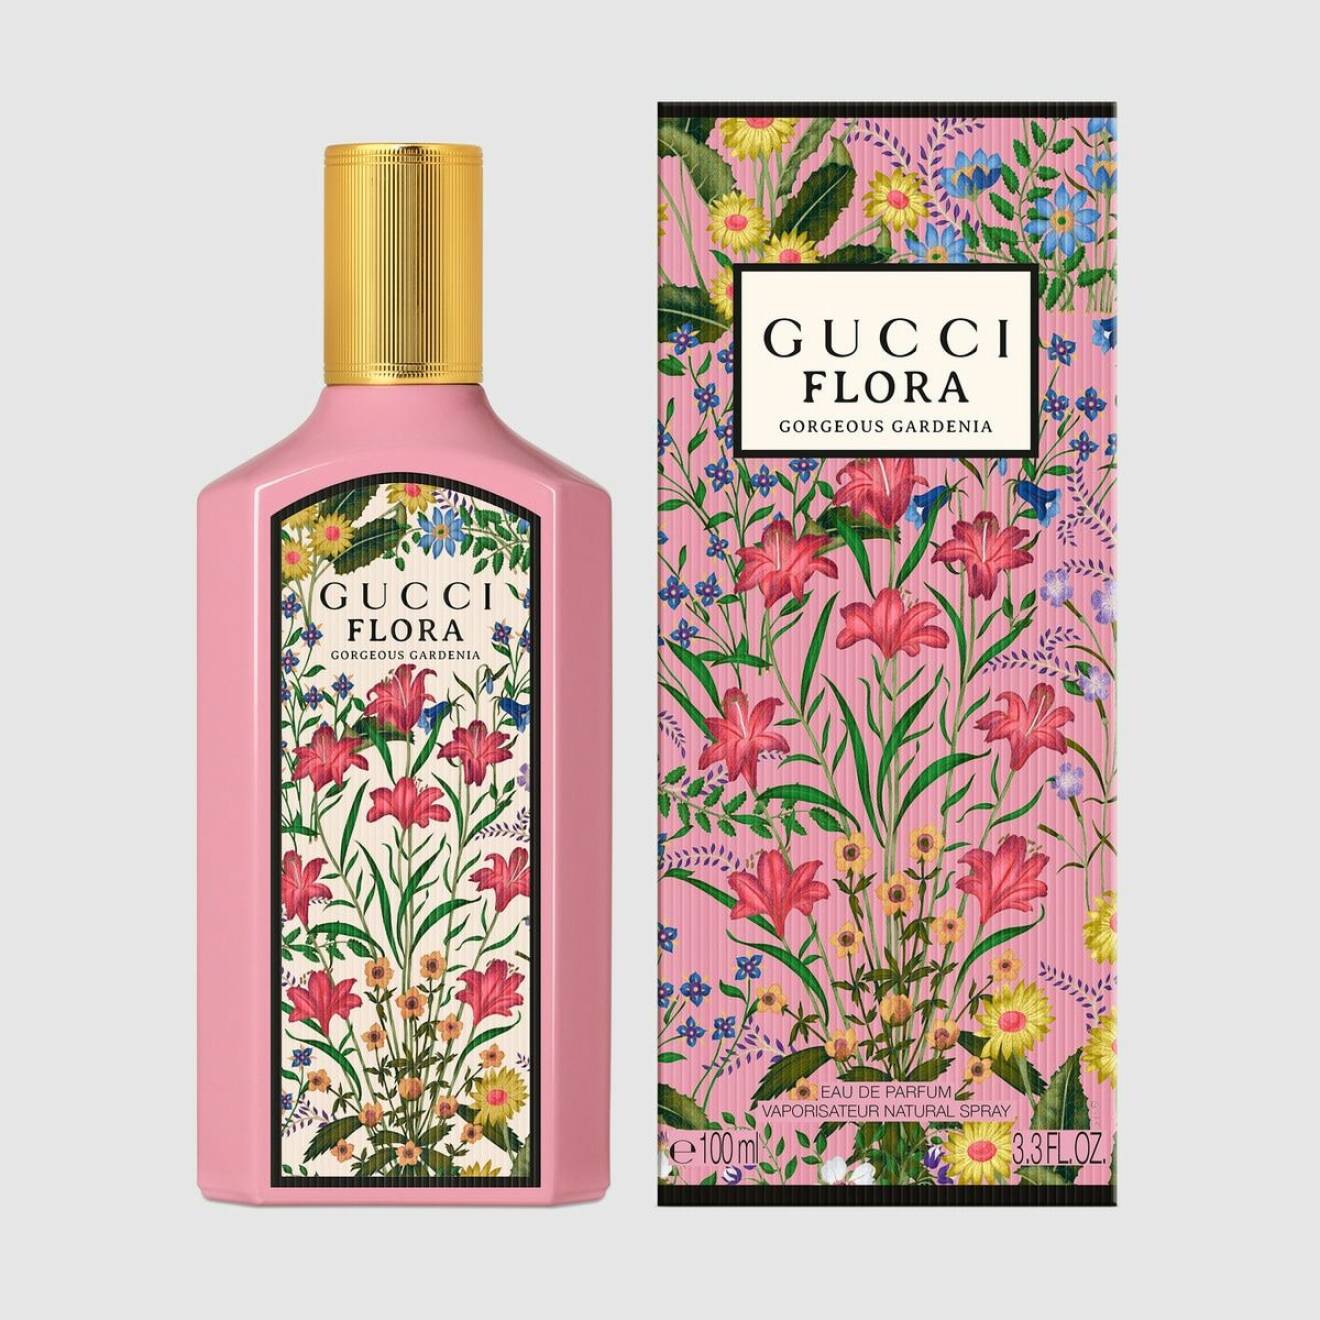 vintagekänsla på Guccis "nya" Flora-doft.